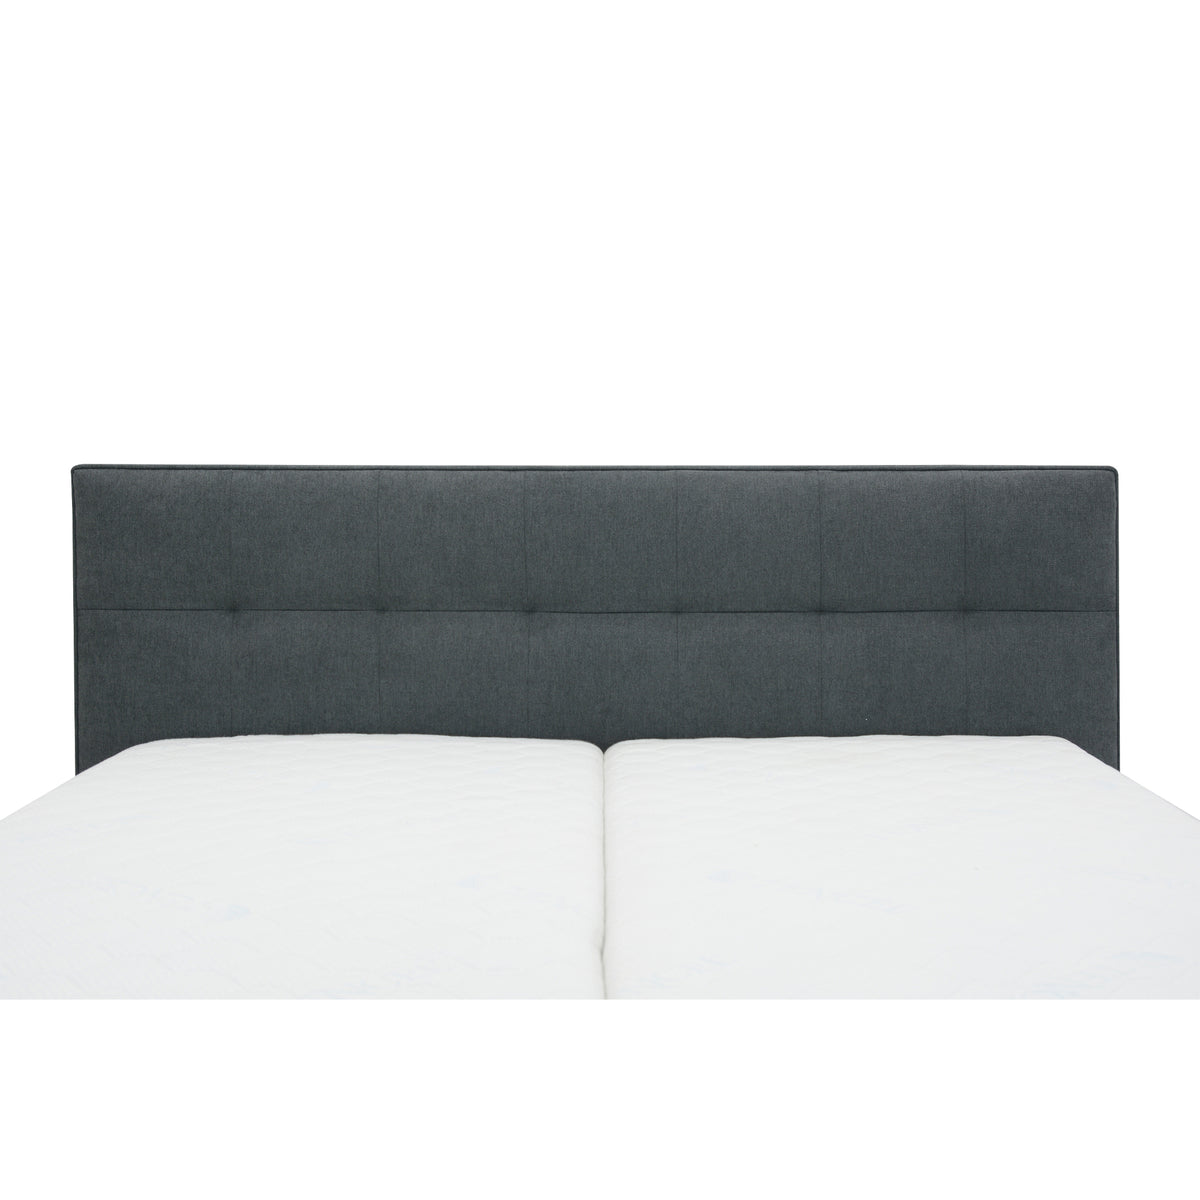 Čalúnená posteľ Trend 160x200, sivá, vr. matraca, bočný výklop